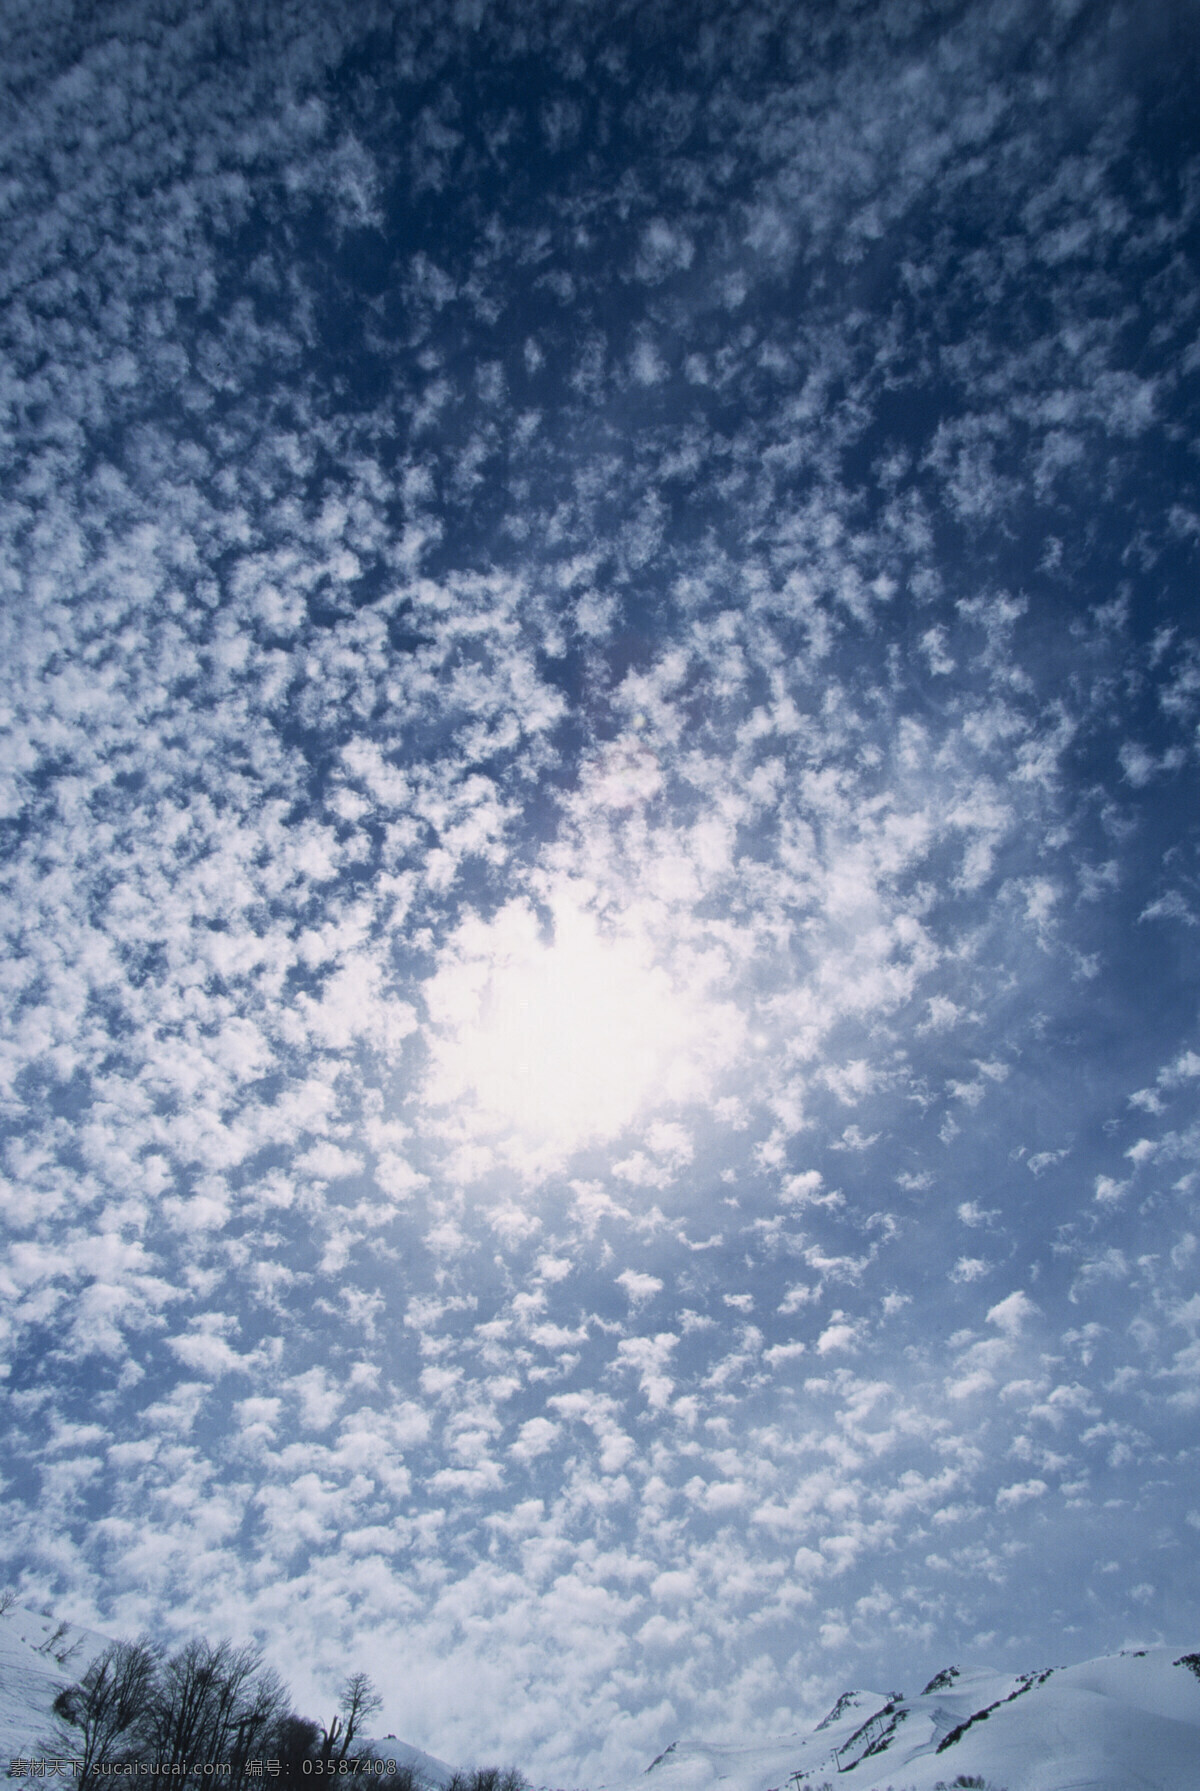 阳光 透过 云层 照射 雪山 白昼 天空 蓝天白云 sky 云团 遮挡 遮挡阳光 白雪 风景 白雪皑皑 高清图片 山水风景 风景图片